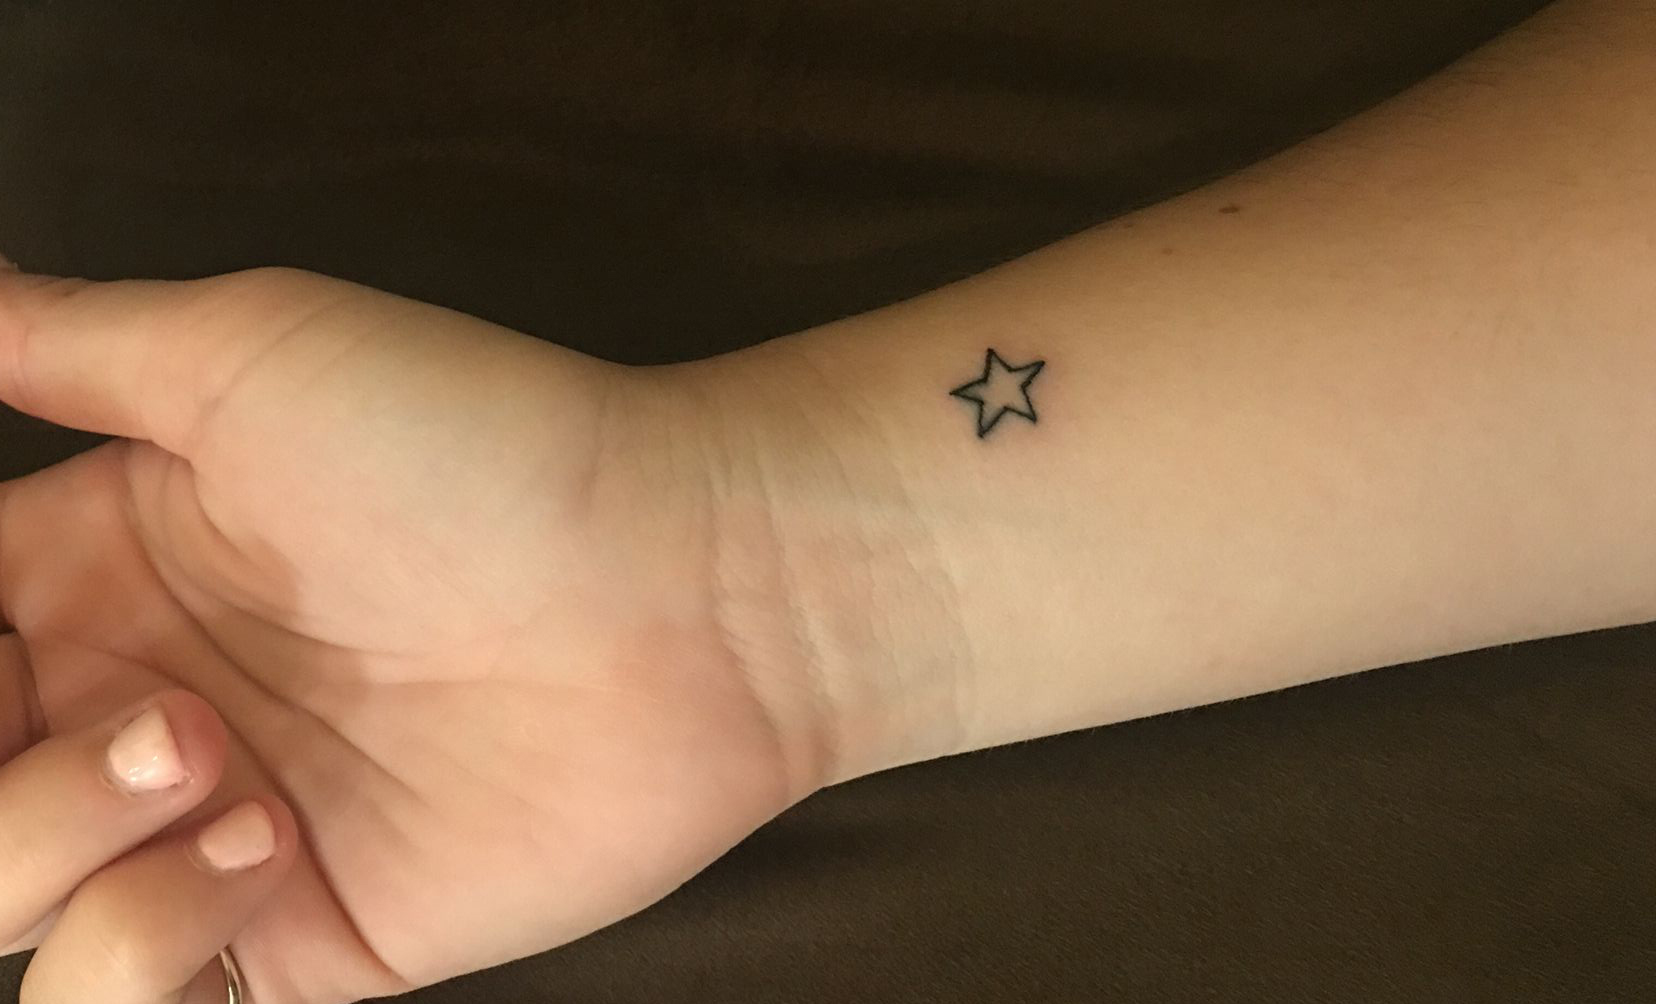 Small Sea Star Tattoos - wide 5